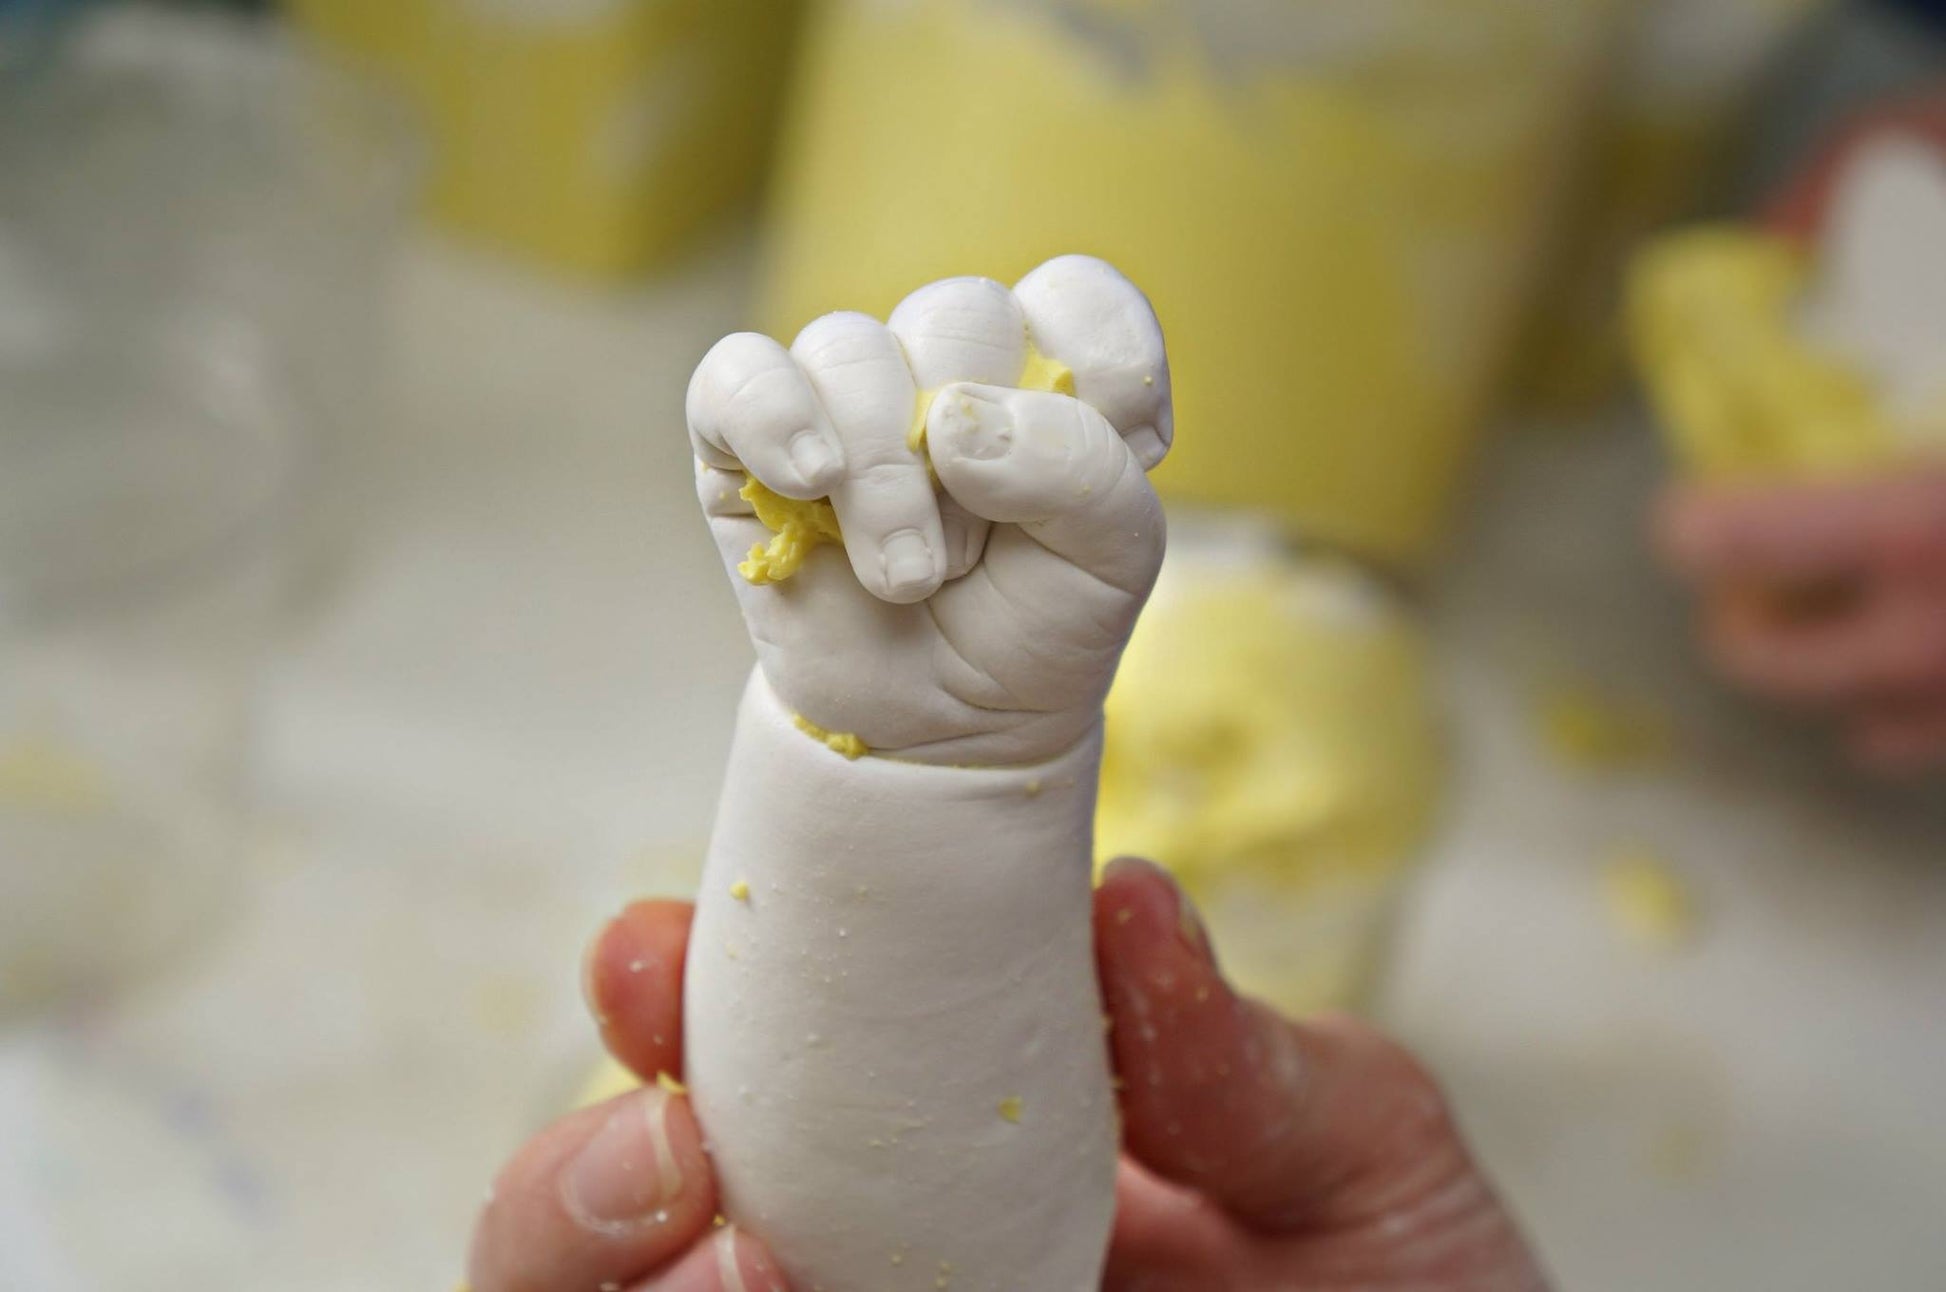 Abformmasse Alginat 453g - 3D Baby Abdruck selbermachen // biologisch & schnell abbindend - Mommy & Baby